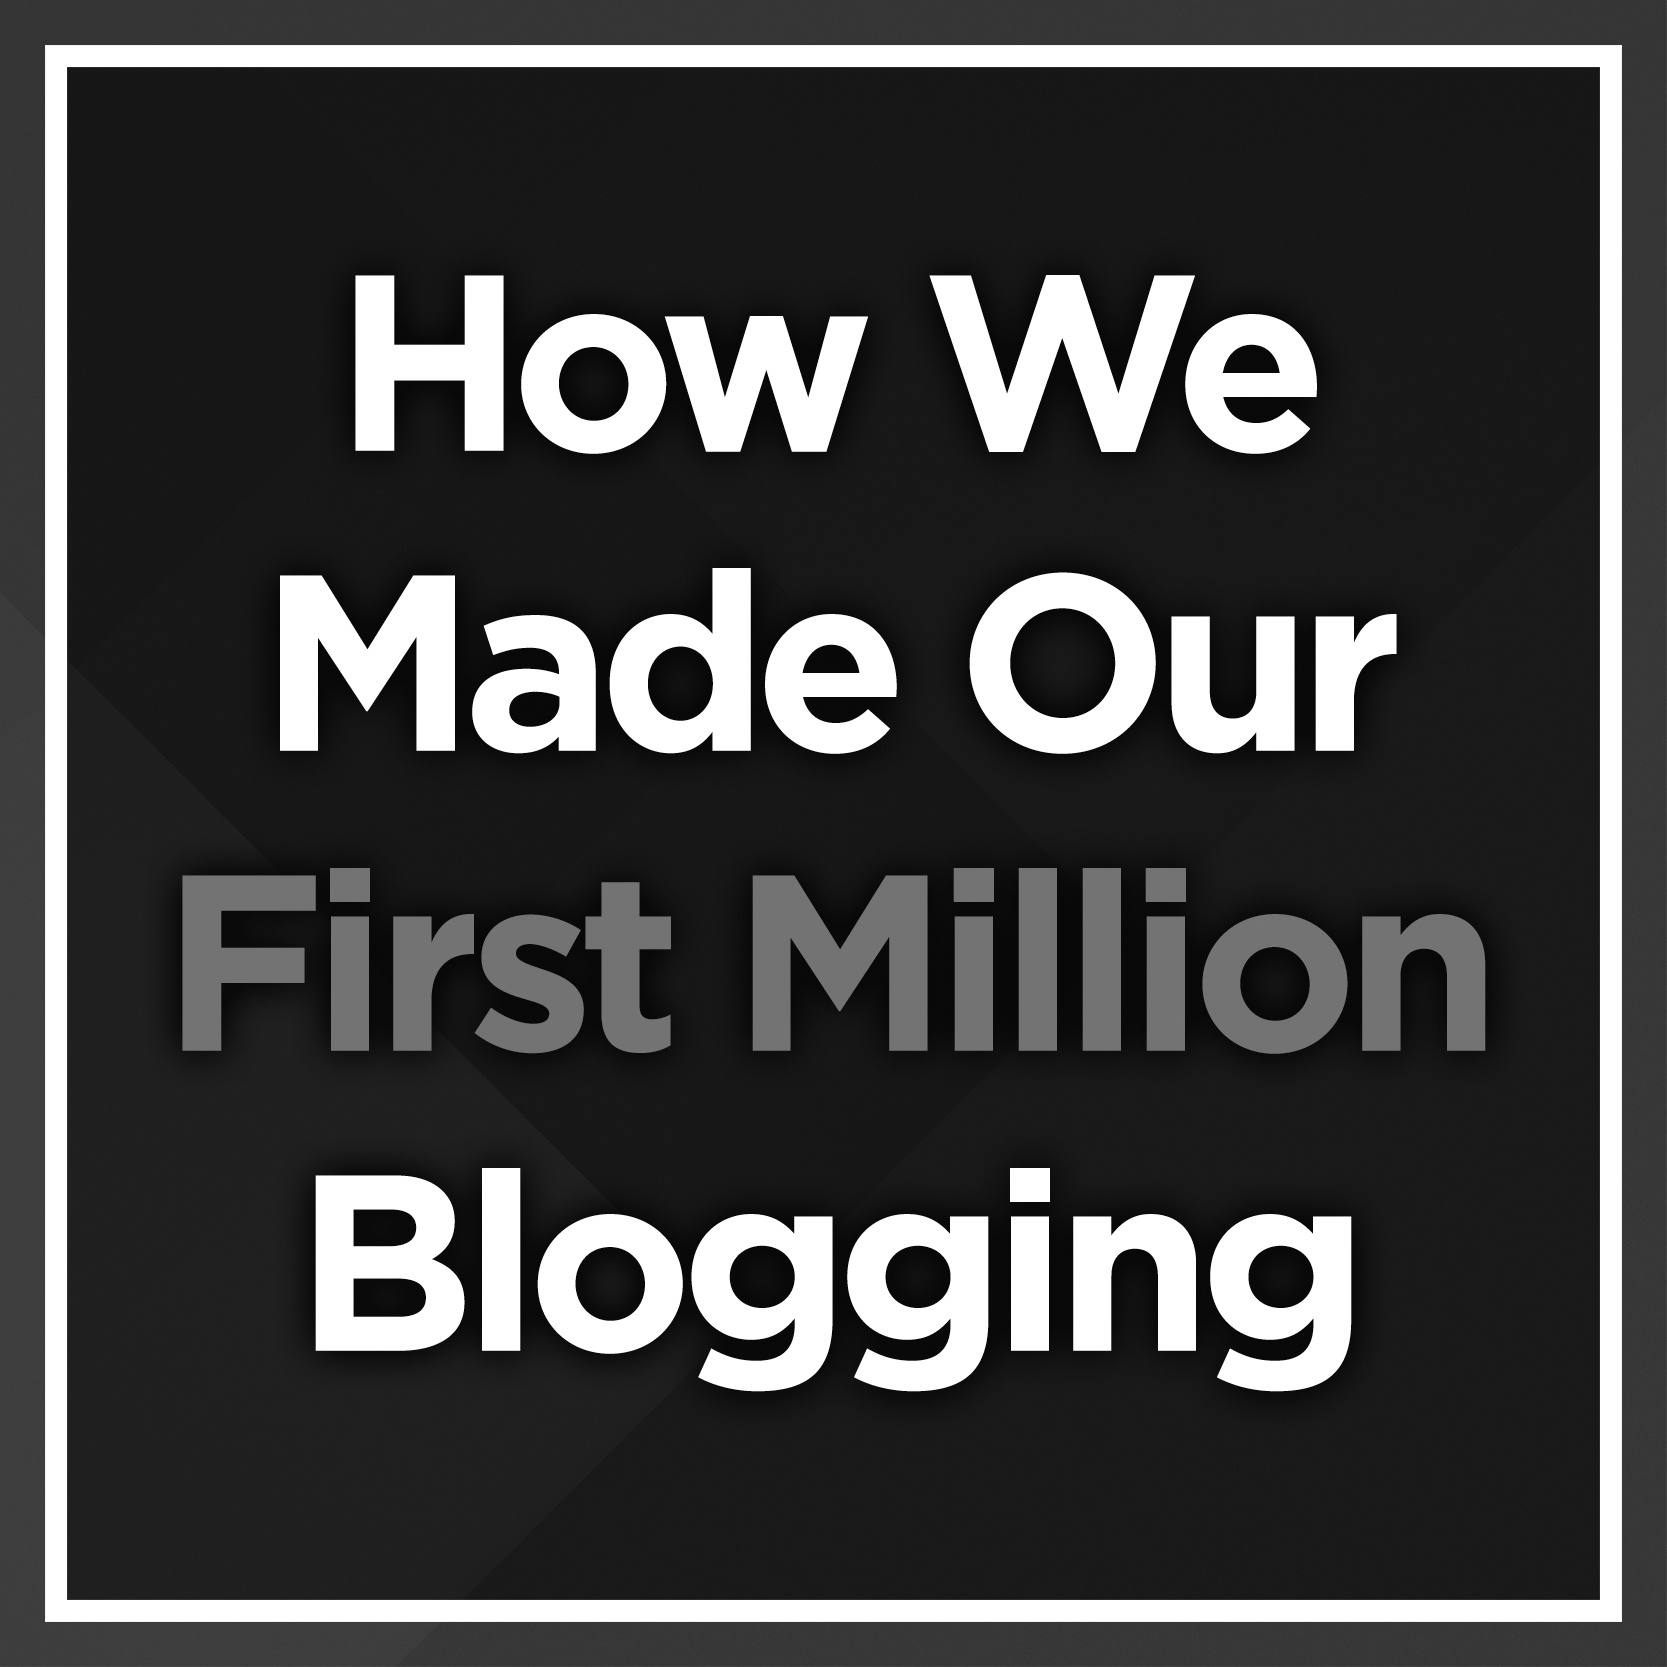 First Million Blogging